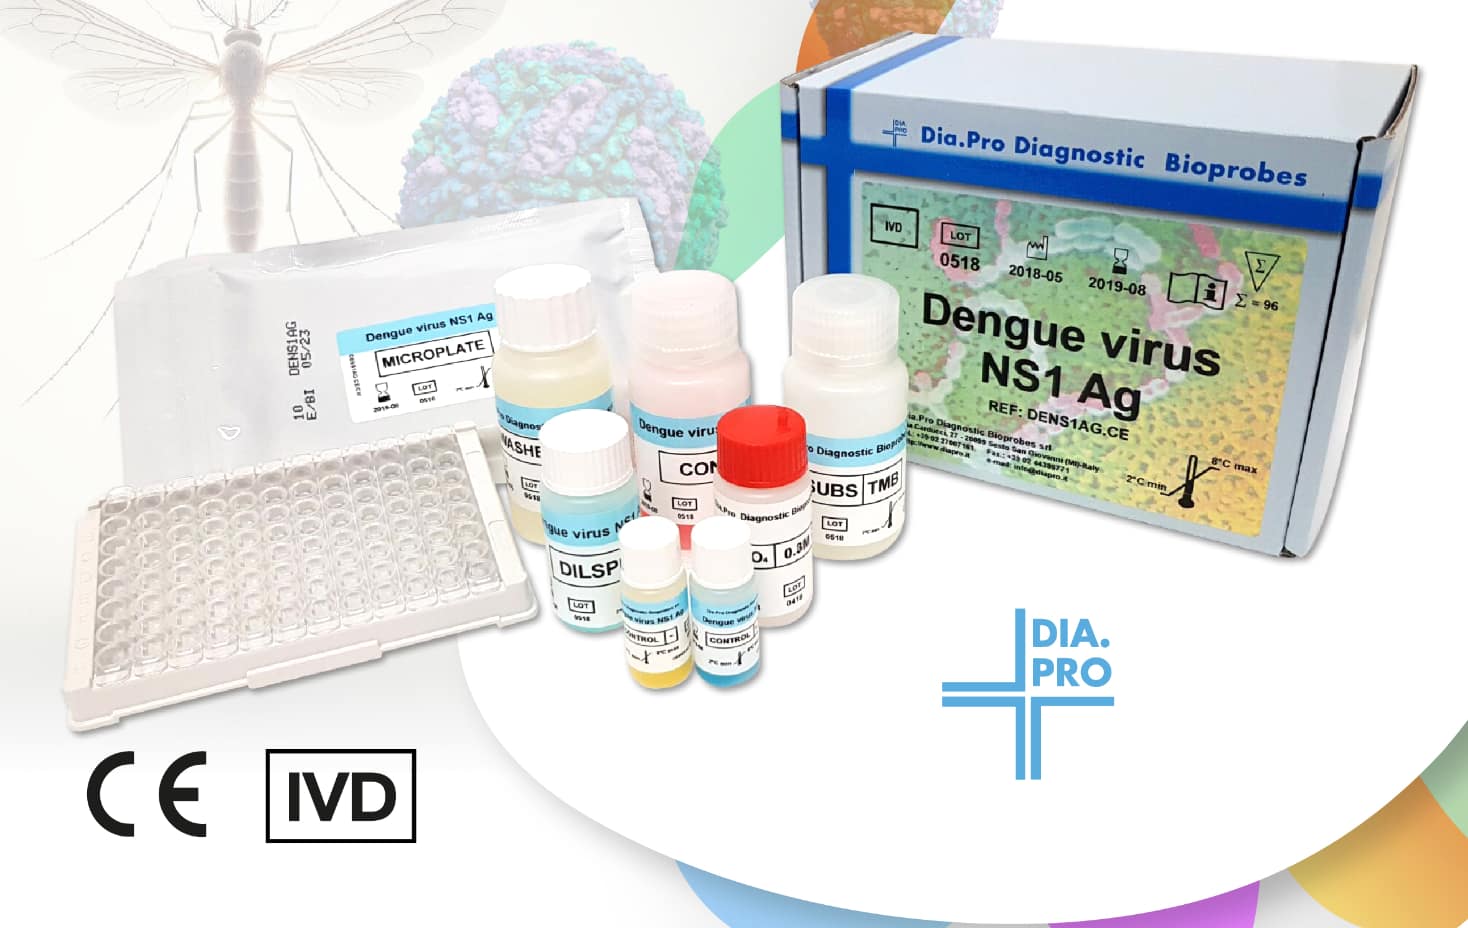 Bioars presenta Dengue virus NS1 Ag, el primer ELISA para la determinación del antígeno NS1 del virus del dengue en Argentina